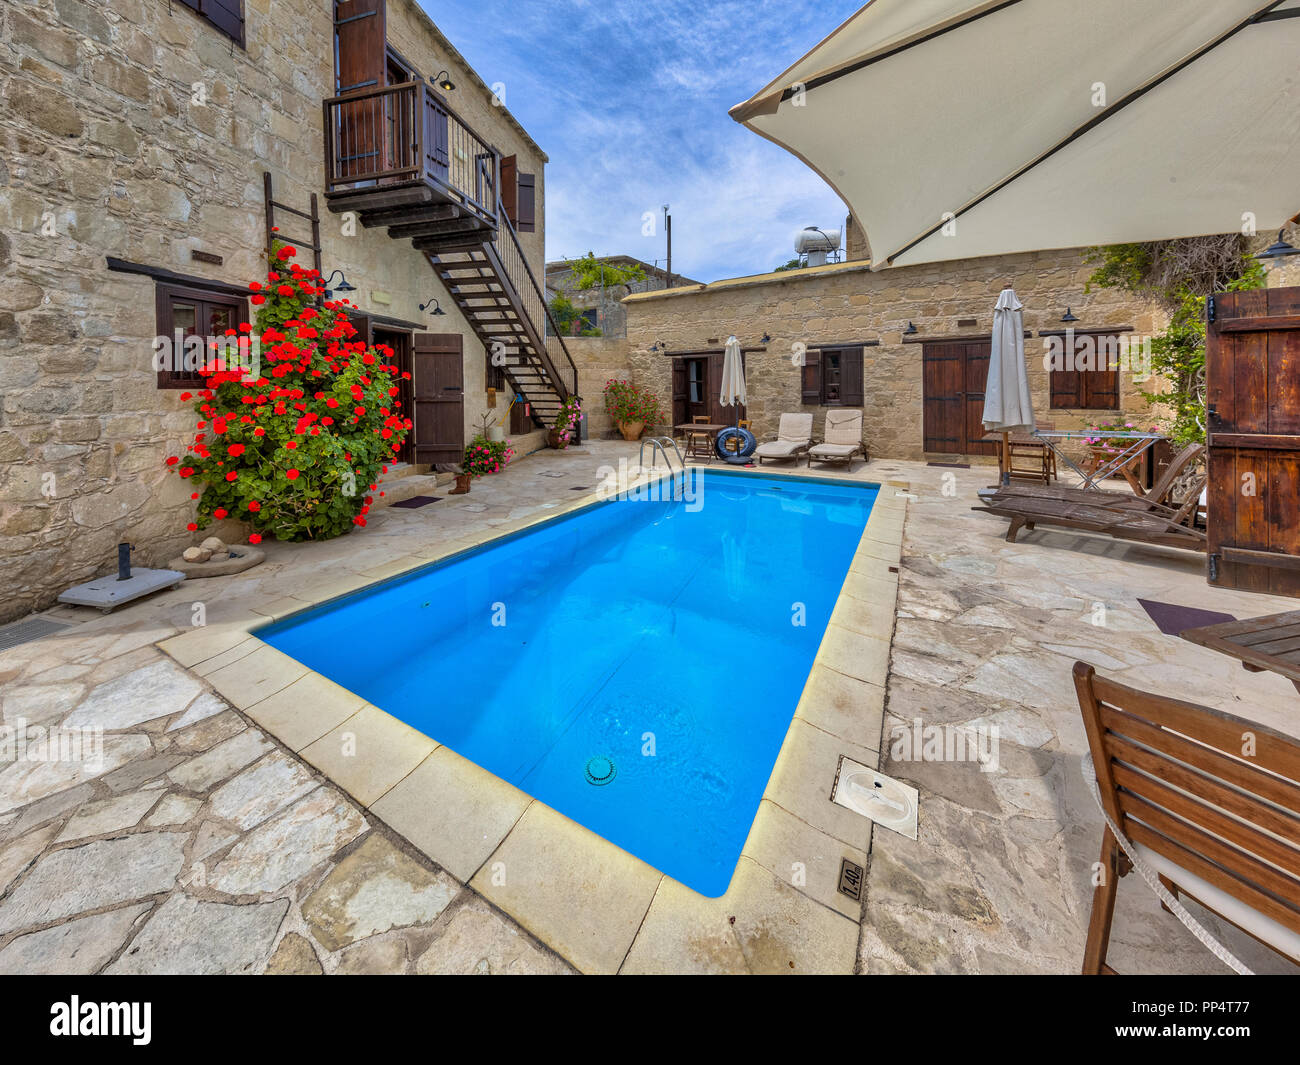 Architektonische Details der Ferienwohnung mit Schwimmbad und Blumen an einem sonnigen Tag Stockfoto